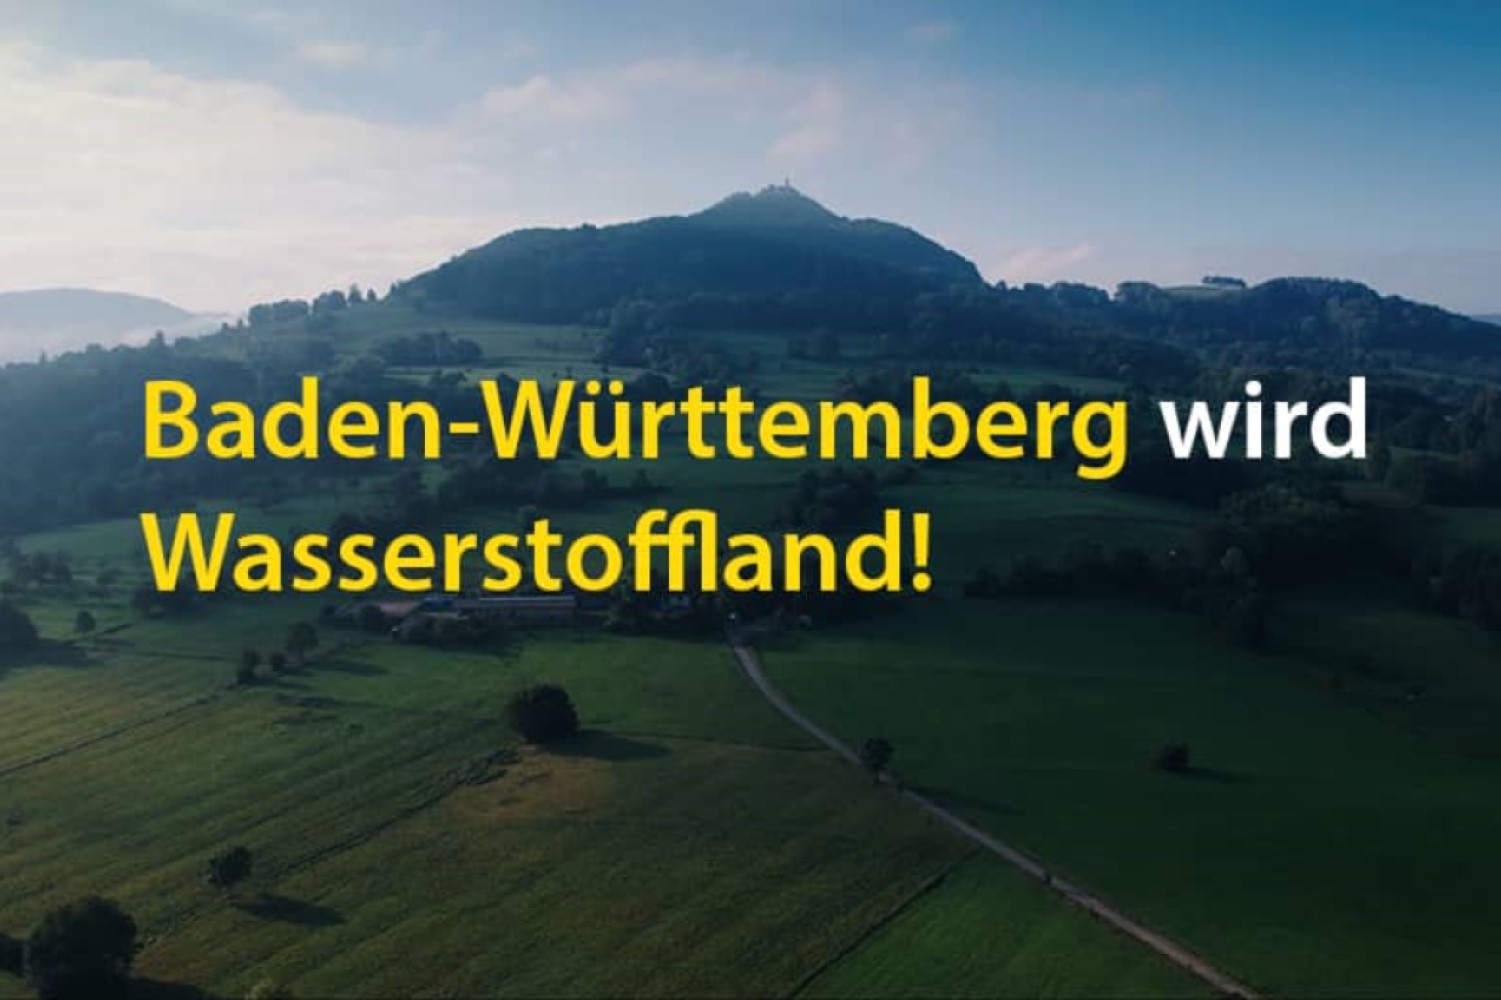 Titelbild des Films zeigt Schriftzug "Baden-Württemberg wird Wasserstoffand" vor einer grünen Landschaft.